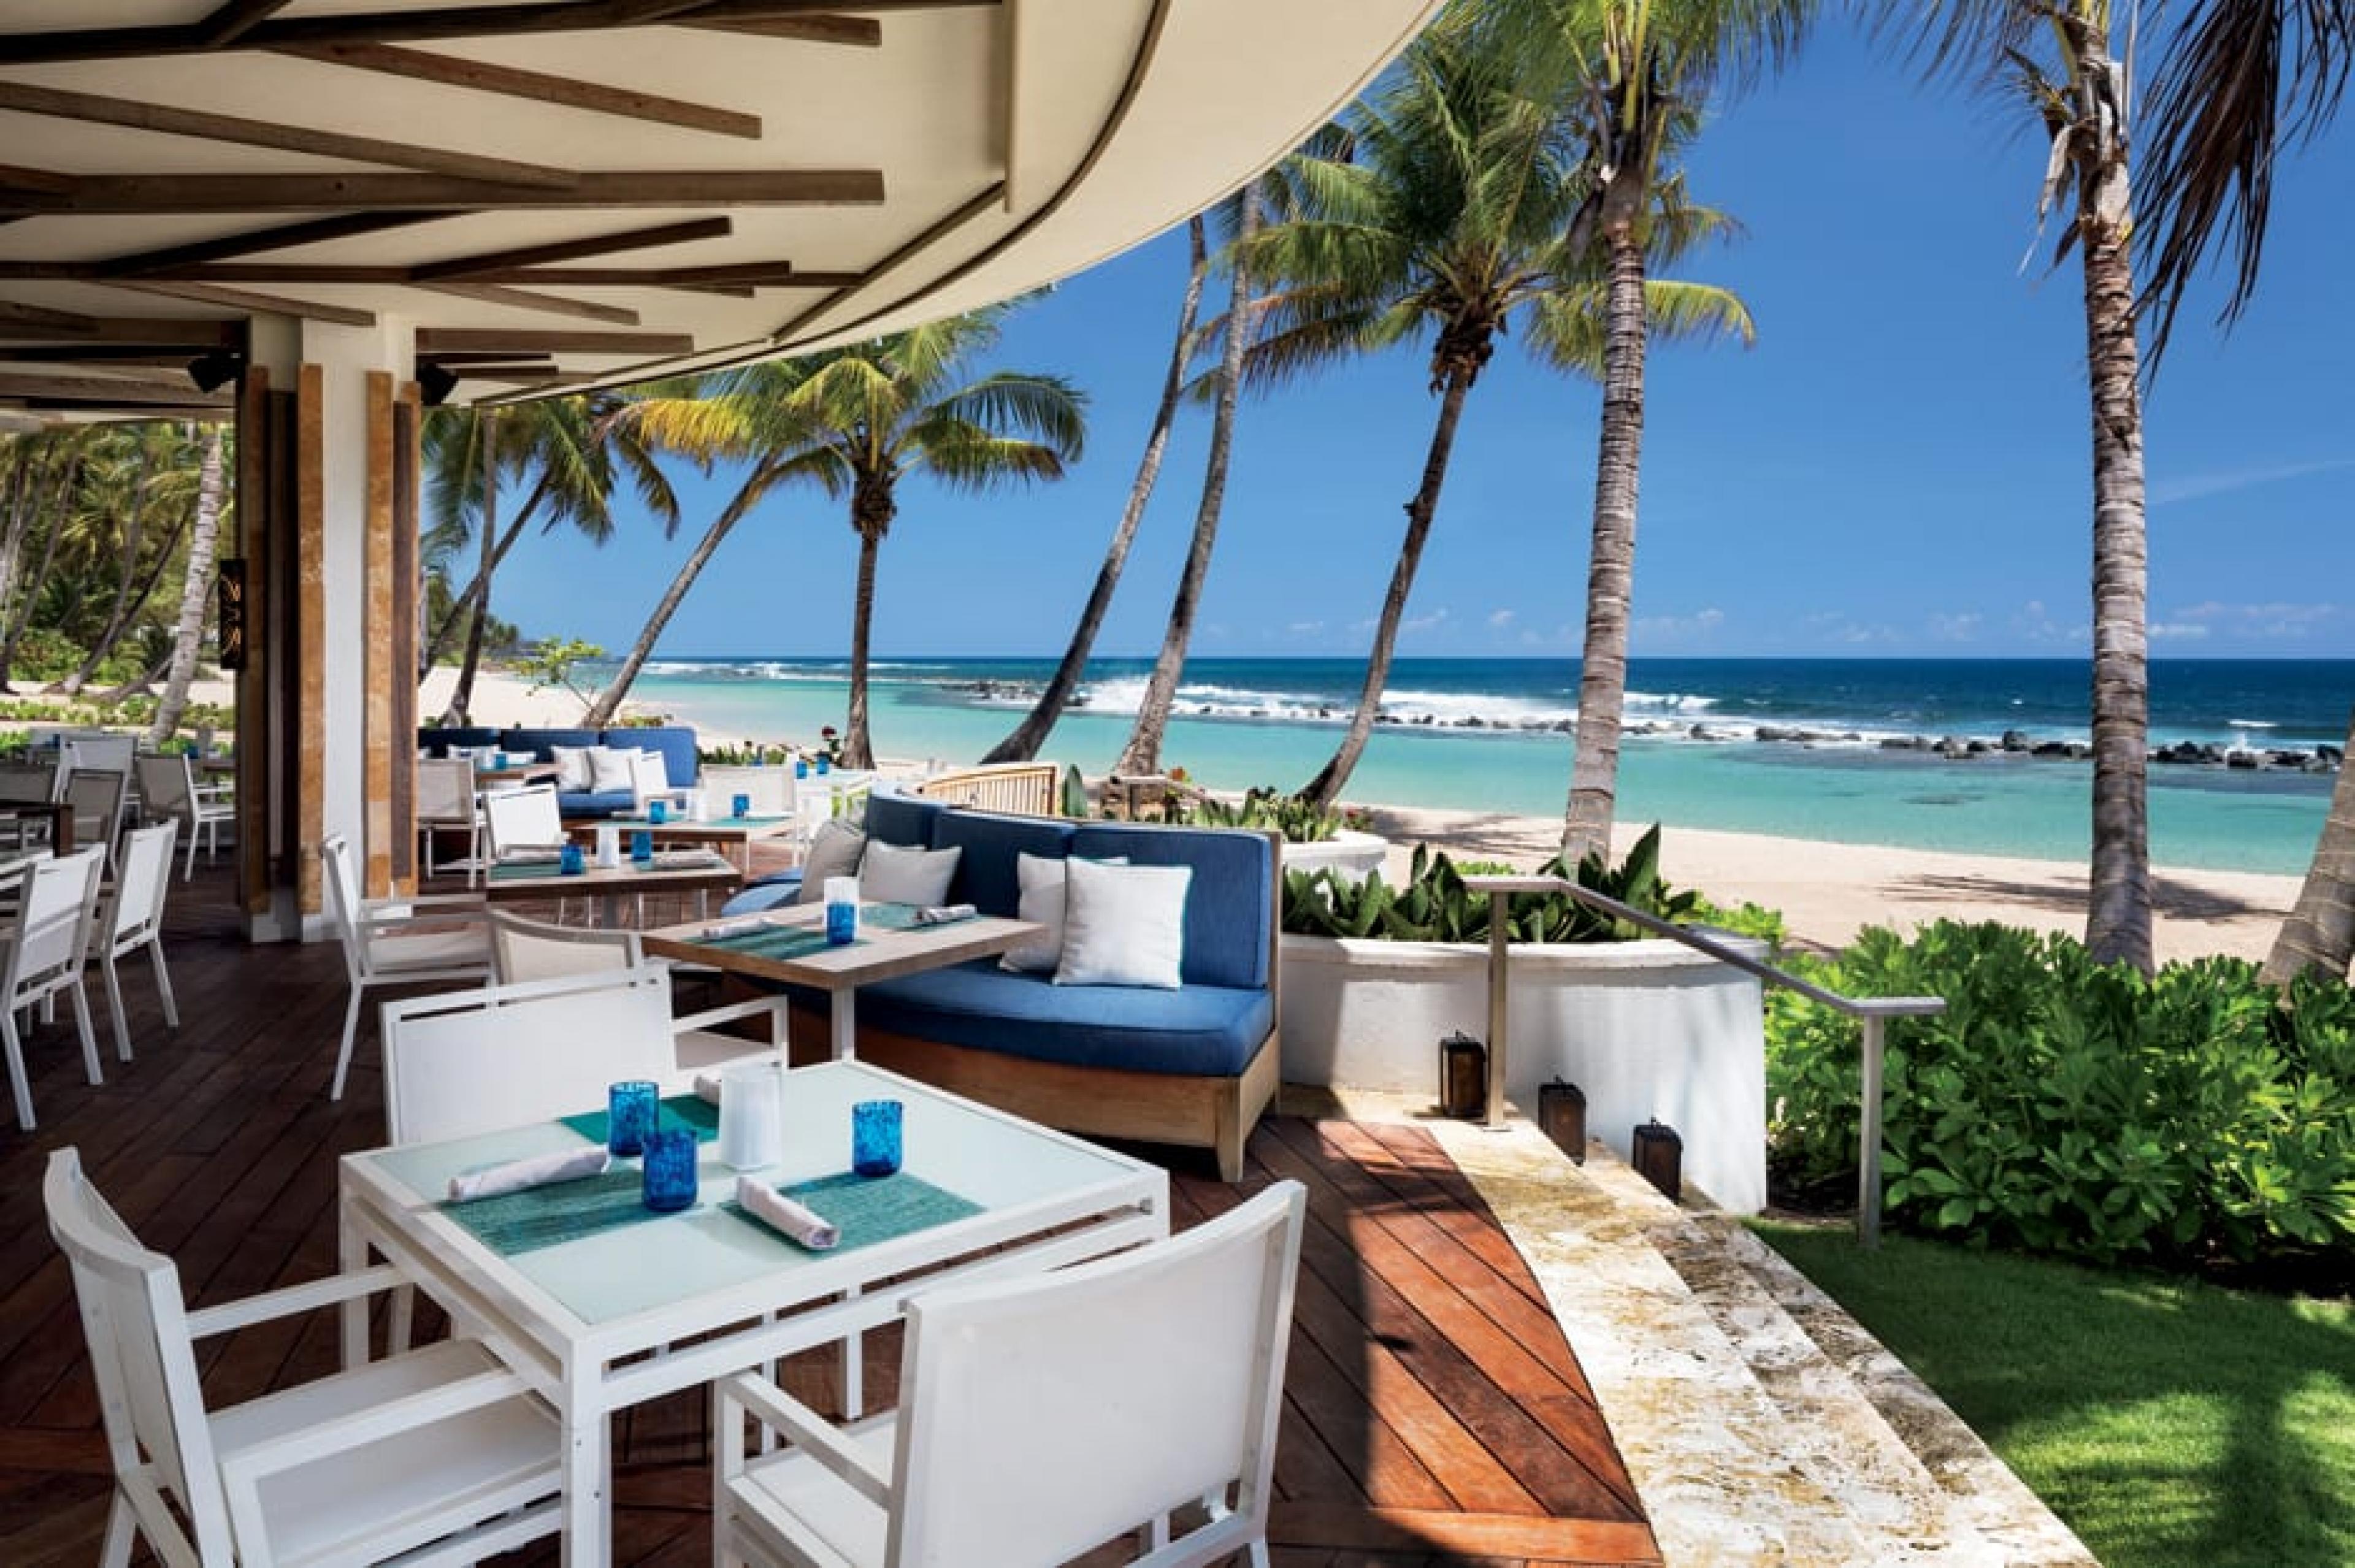 Outdoor Lounge at Encanto Bar, Puerto Rico, Caribbean